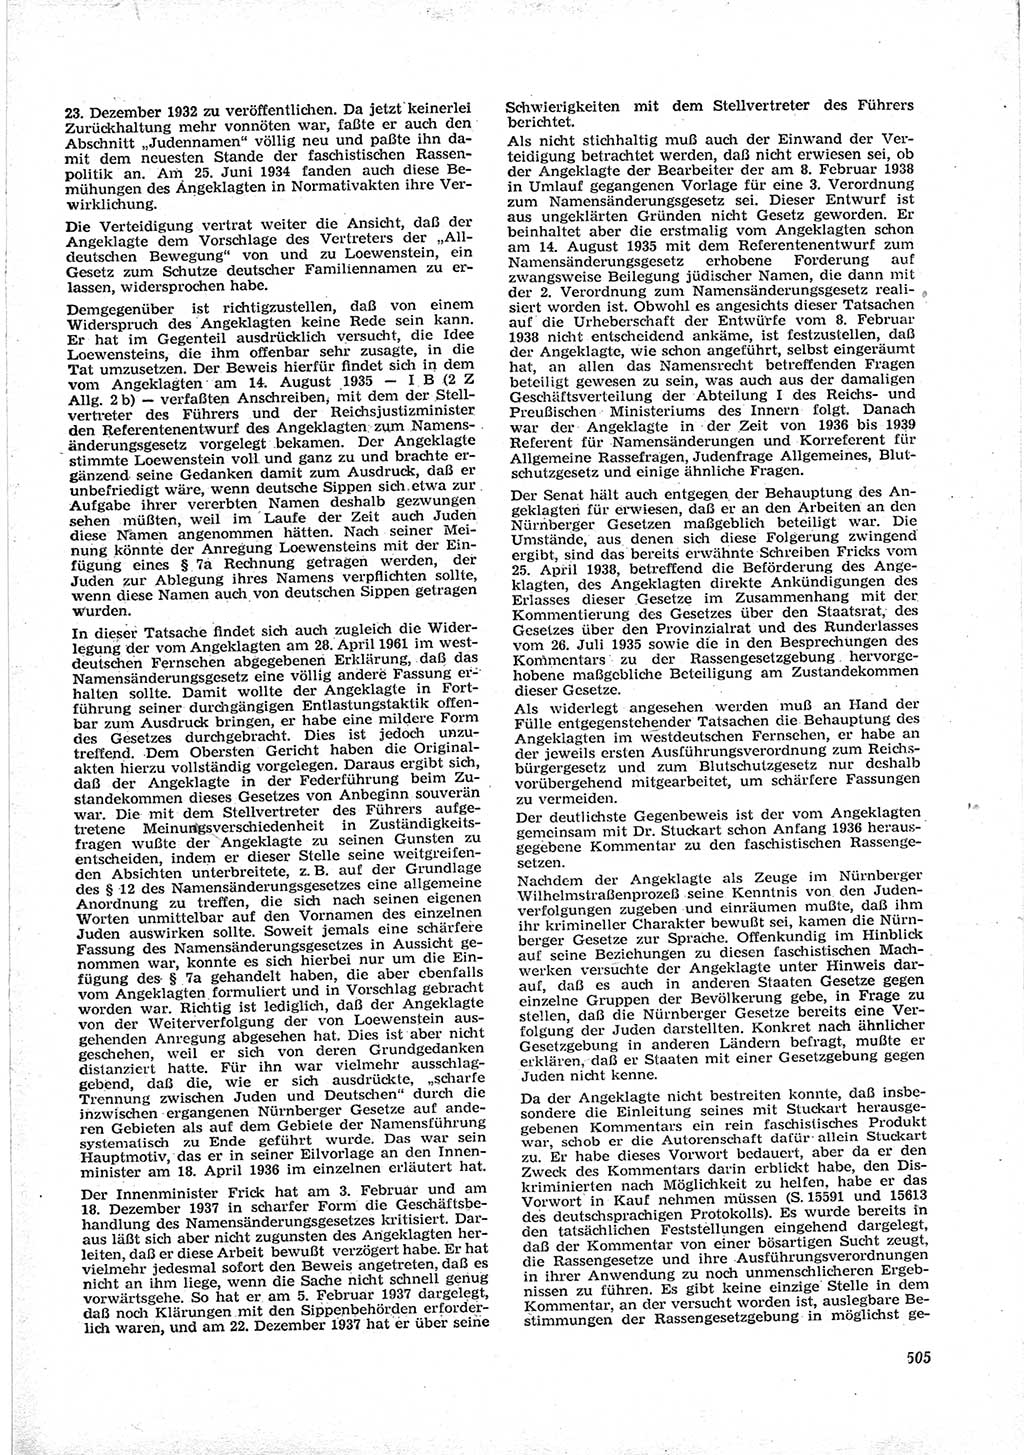 Neue Justiz (NJ), Zeitschrift für Recht und Rechtswissenschaft [Deutsche Demokratische Republik (DDR)], 17. Jahrgang 1963, Seite 505 (NJ DDR 1963, S. 505)